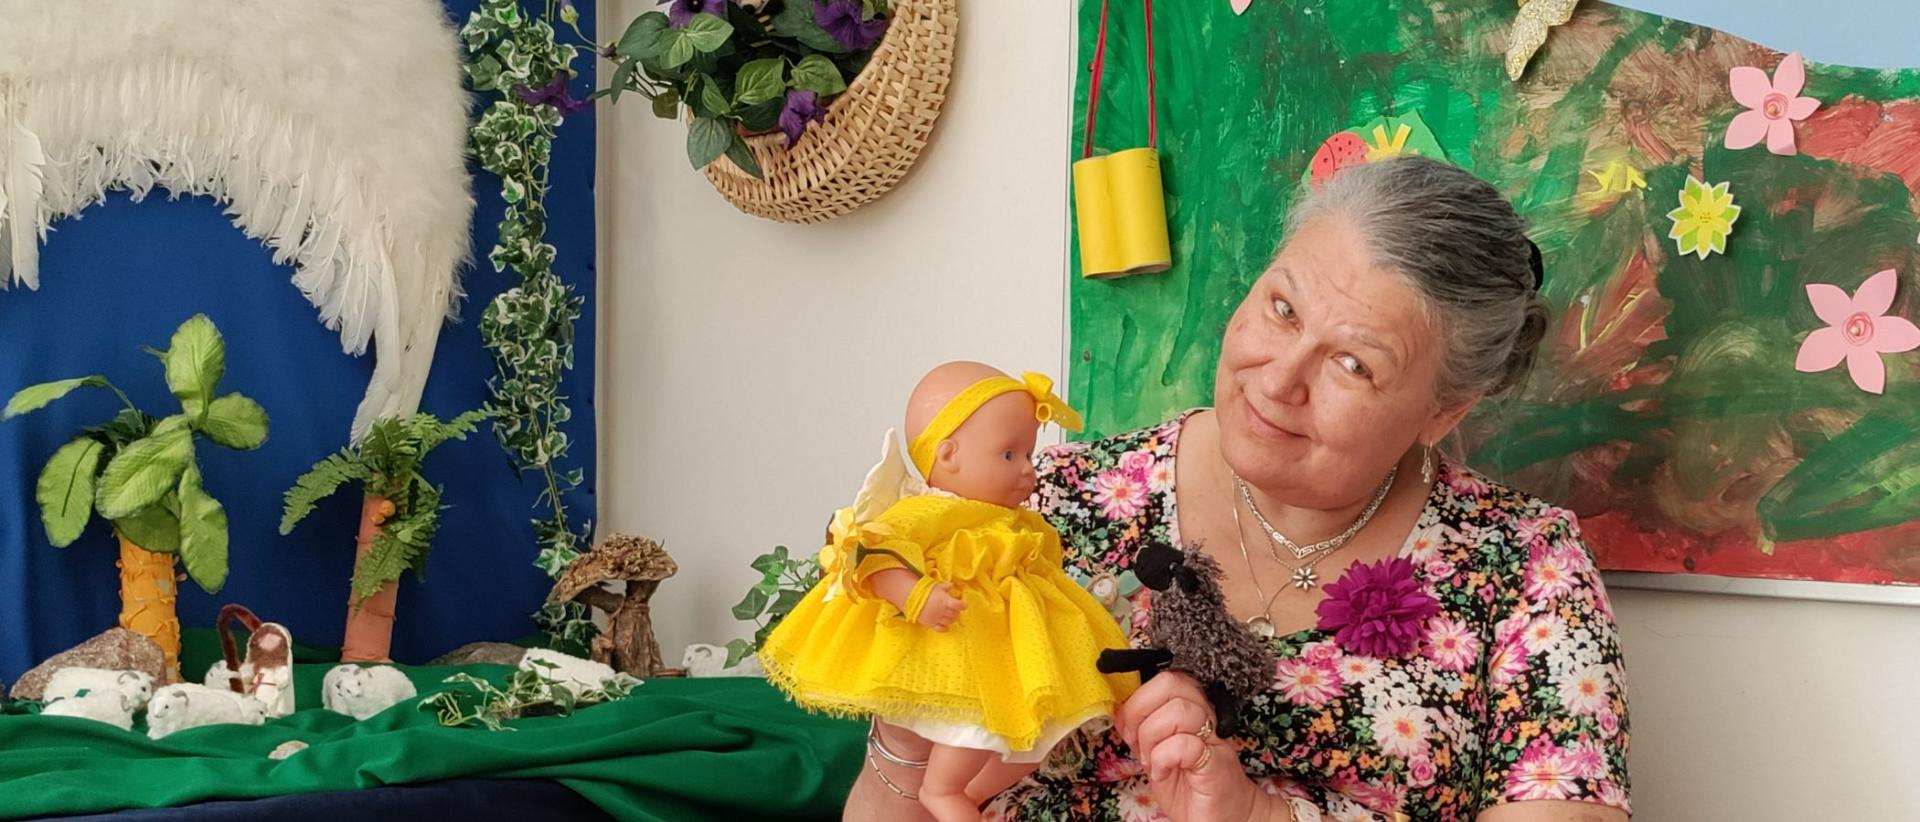 Mikaelin seurakunnan lastenohjaaja Auli Karhu päiväkerhotilassa kädessään keltaisessa mekossa oleva nukke ja lammas